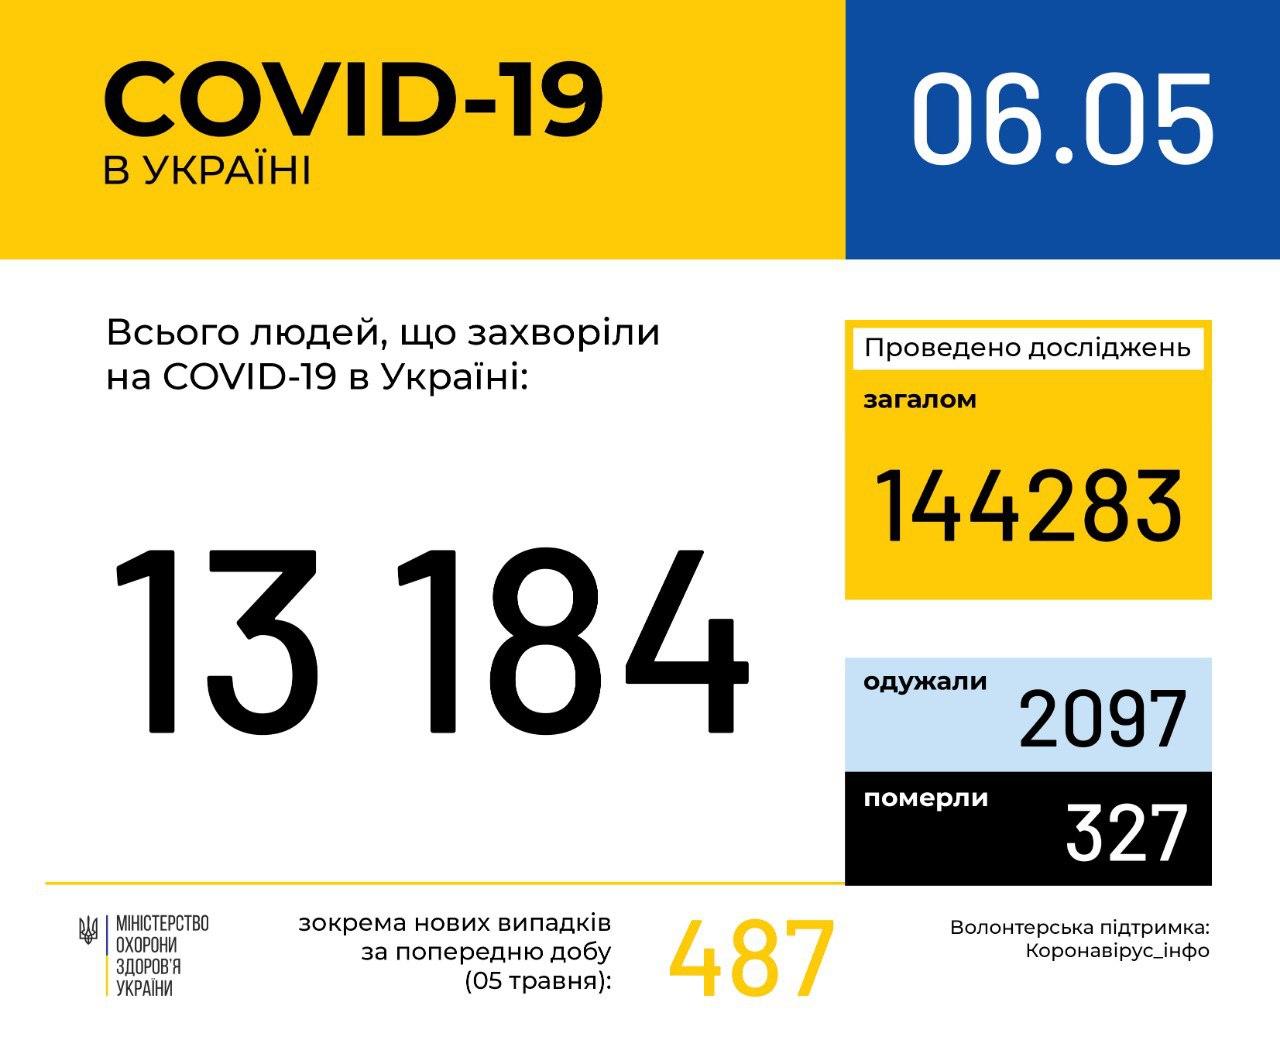 В Україні зафіксовано 13184 випадки коронавірусної хвороби COVID-19, - МОЗ